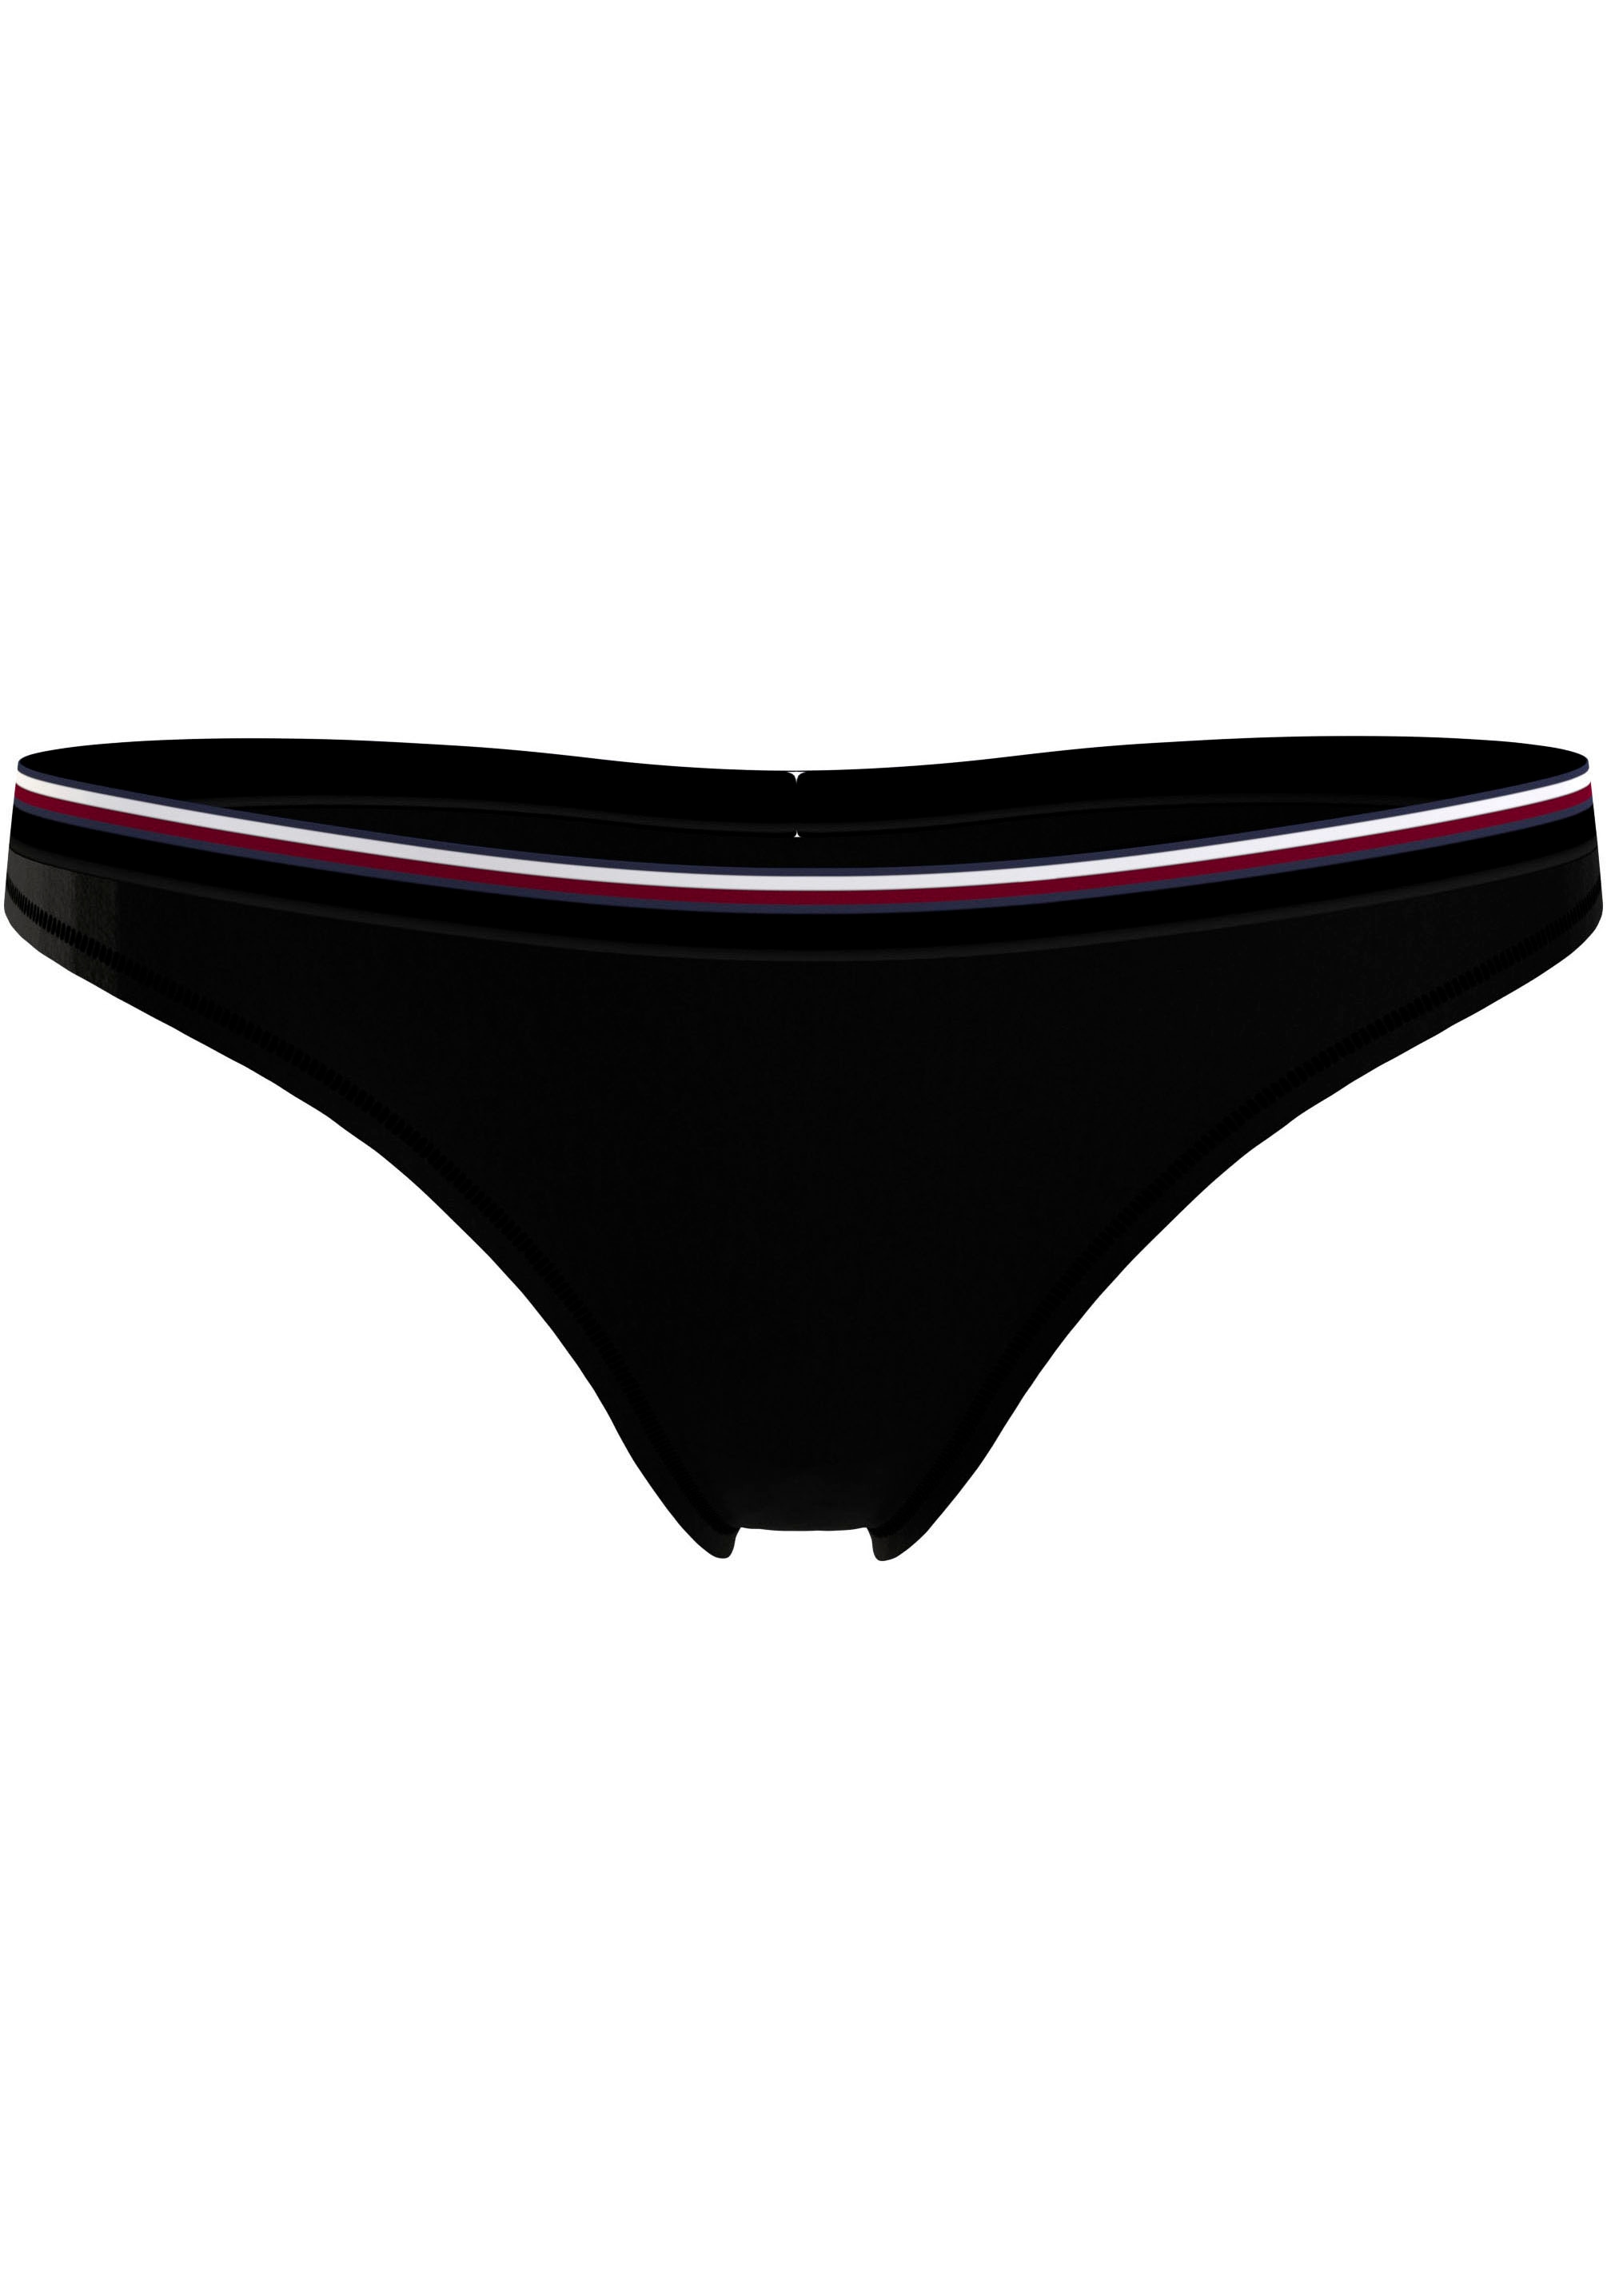 Tommy Hilfiger Underwear Slip, mit Elastikbund in den TH-Farben